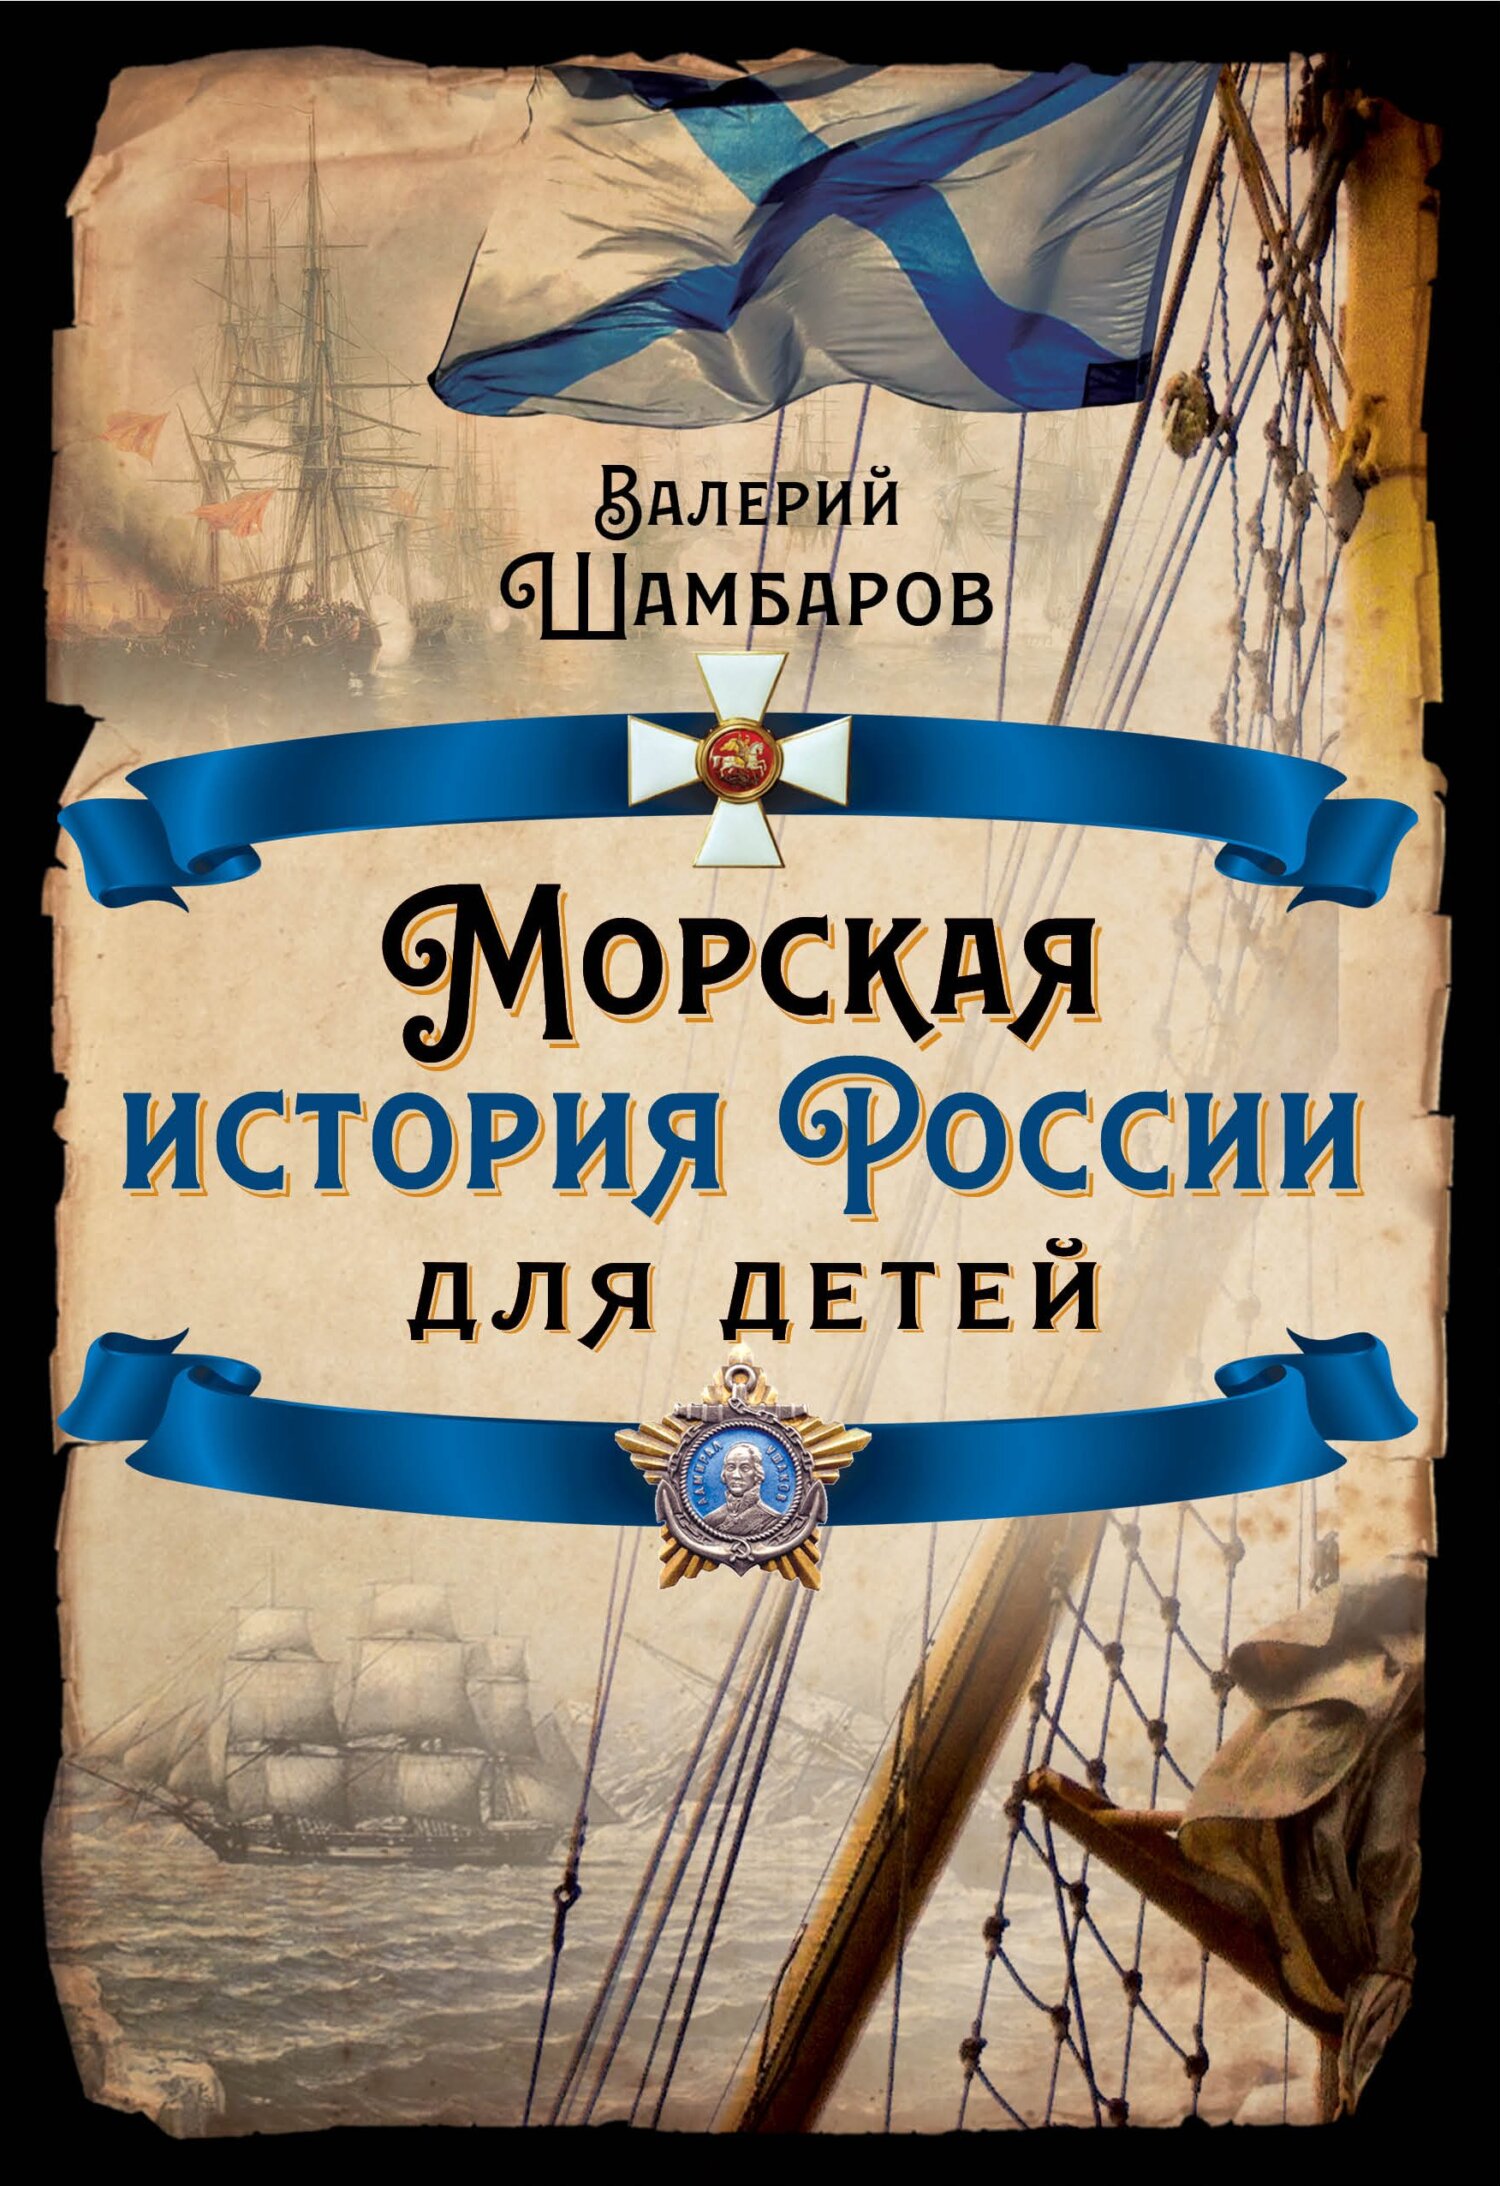 Морская история России для детей - Валерий Евгеньевич Шамбаров